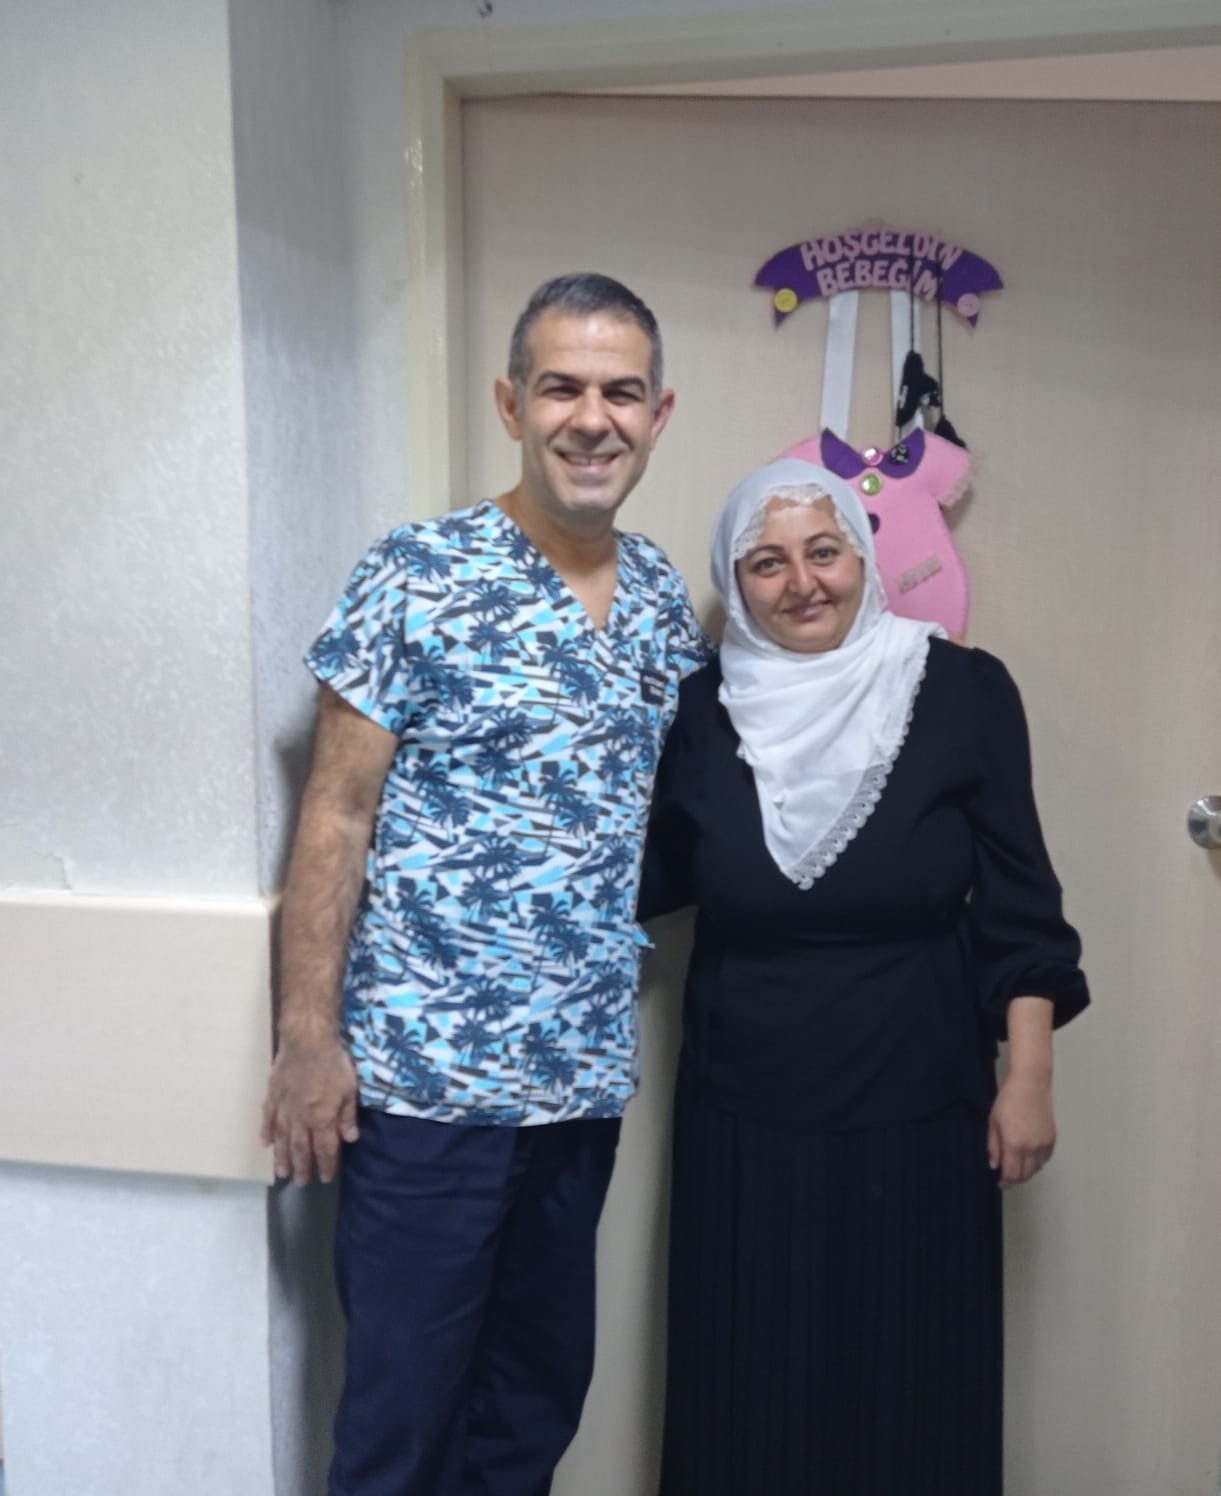 Diyarbakır’da bir kadın 15 yıl sonra gebe kaldı